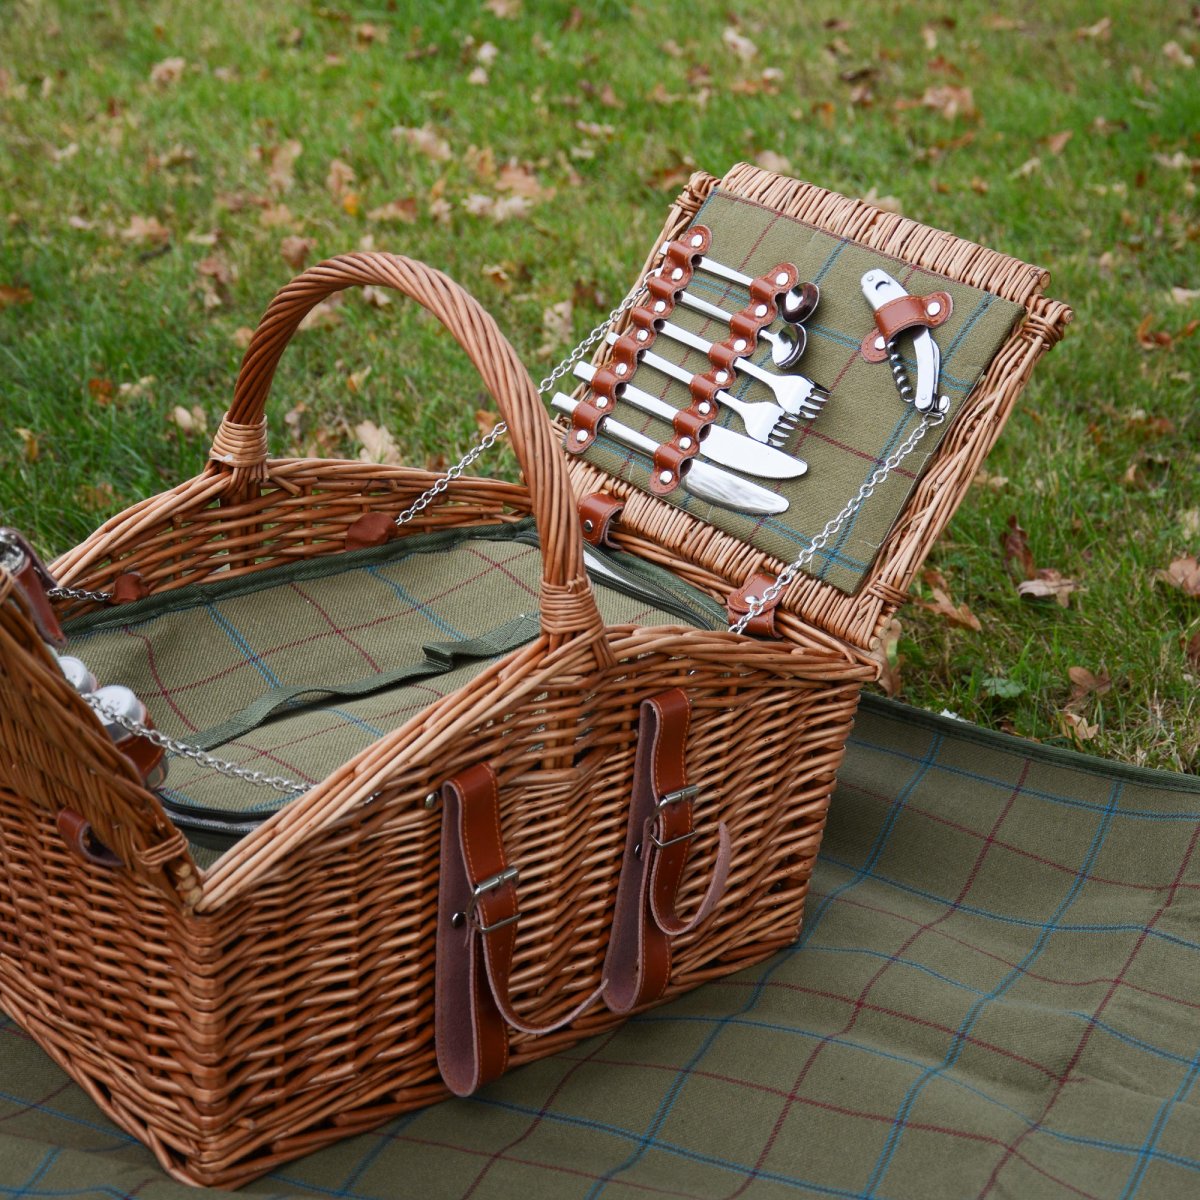 Outdoor Camping Rosa L TELAM Picknickkorb für 4 Personen Wicker Picknickkorb Wicker Hamper mit wasserdichter Picknickdecke Set mit Besteck hält Lebensmitteltemperatur für Picknick 